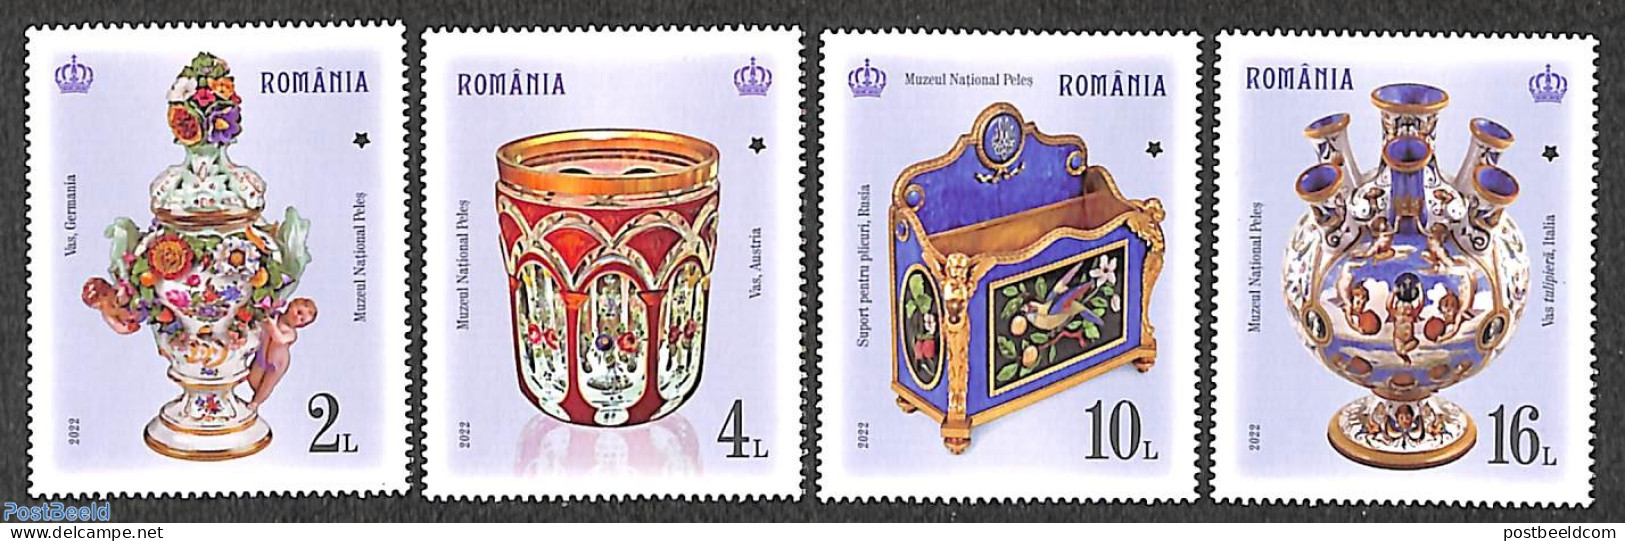 Romania 2022 Peles Castle Treasures 4v, Mint NH, Art - Art & Antique Objects - Ceramics - Ungebraucht